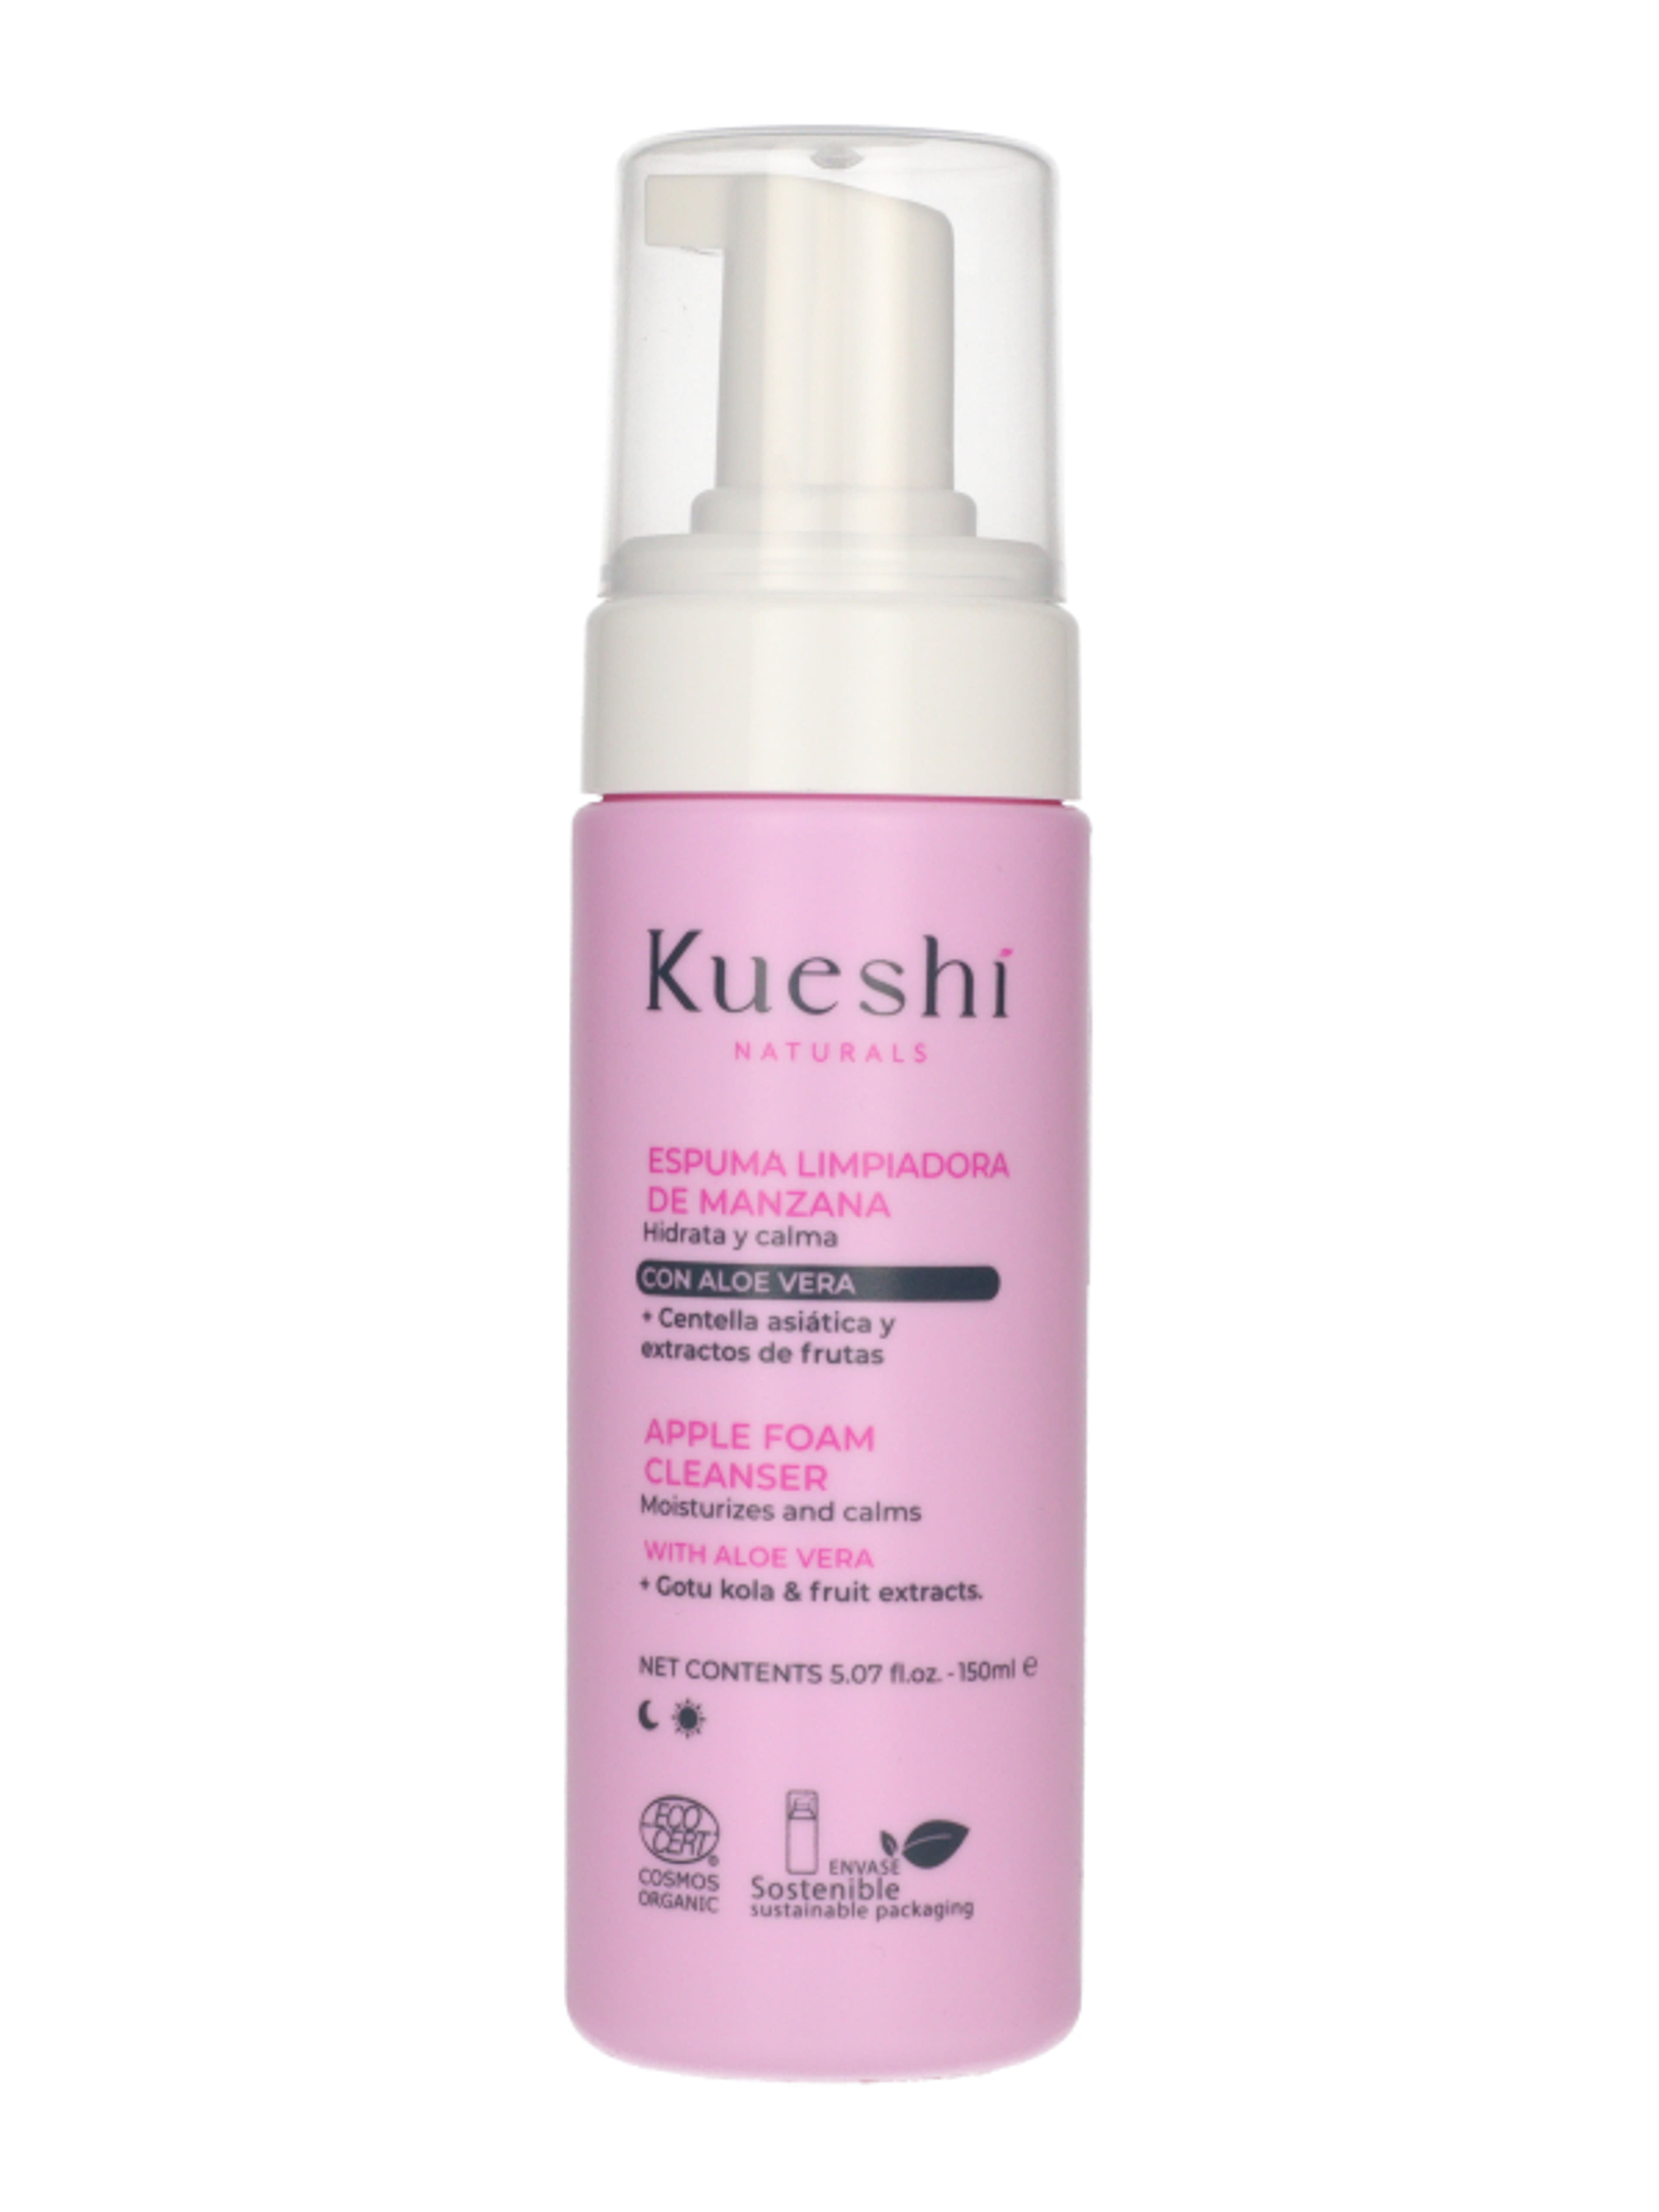 Kueshi Naturals gyengéd arctisztító hab - 150 ml